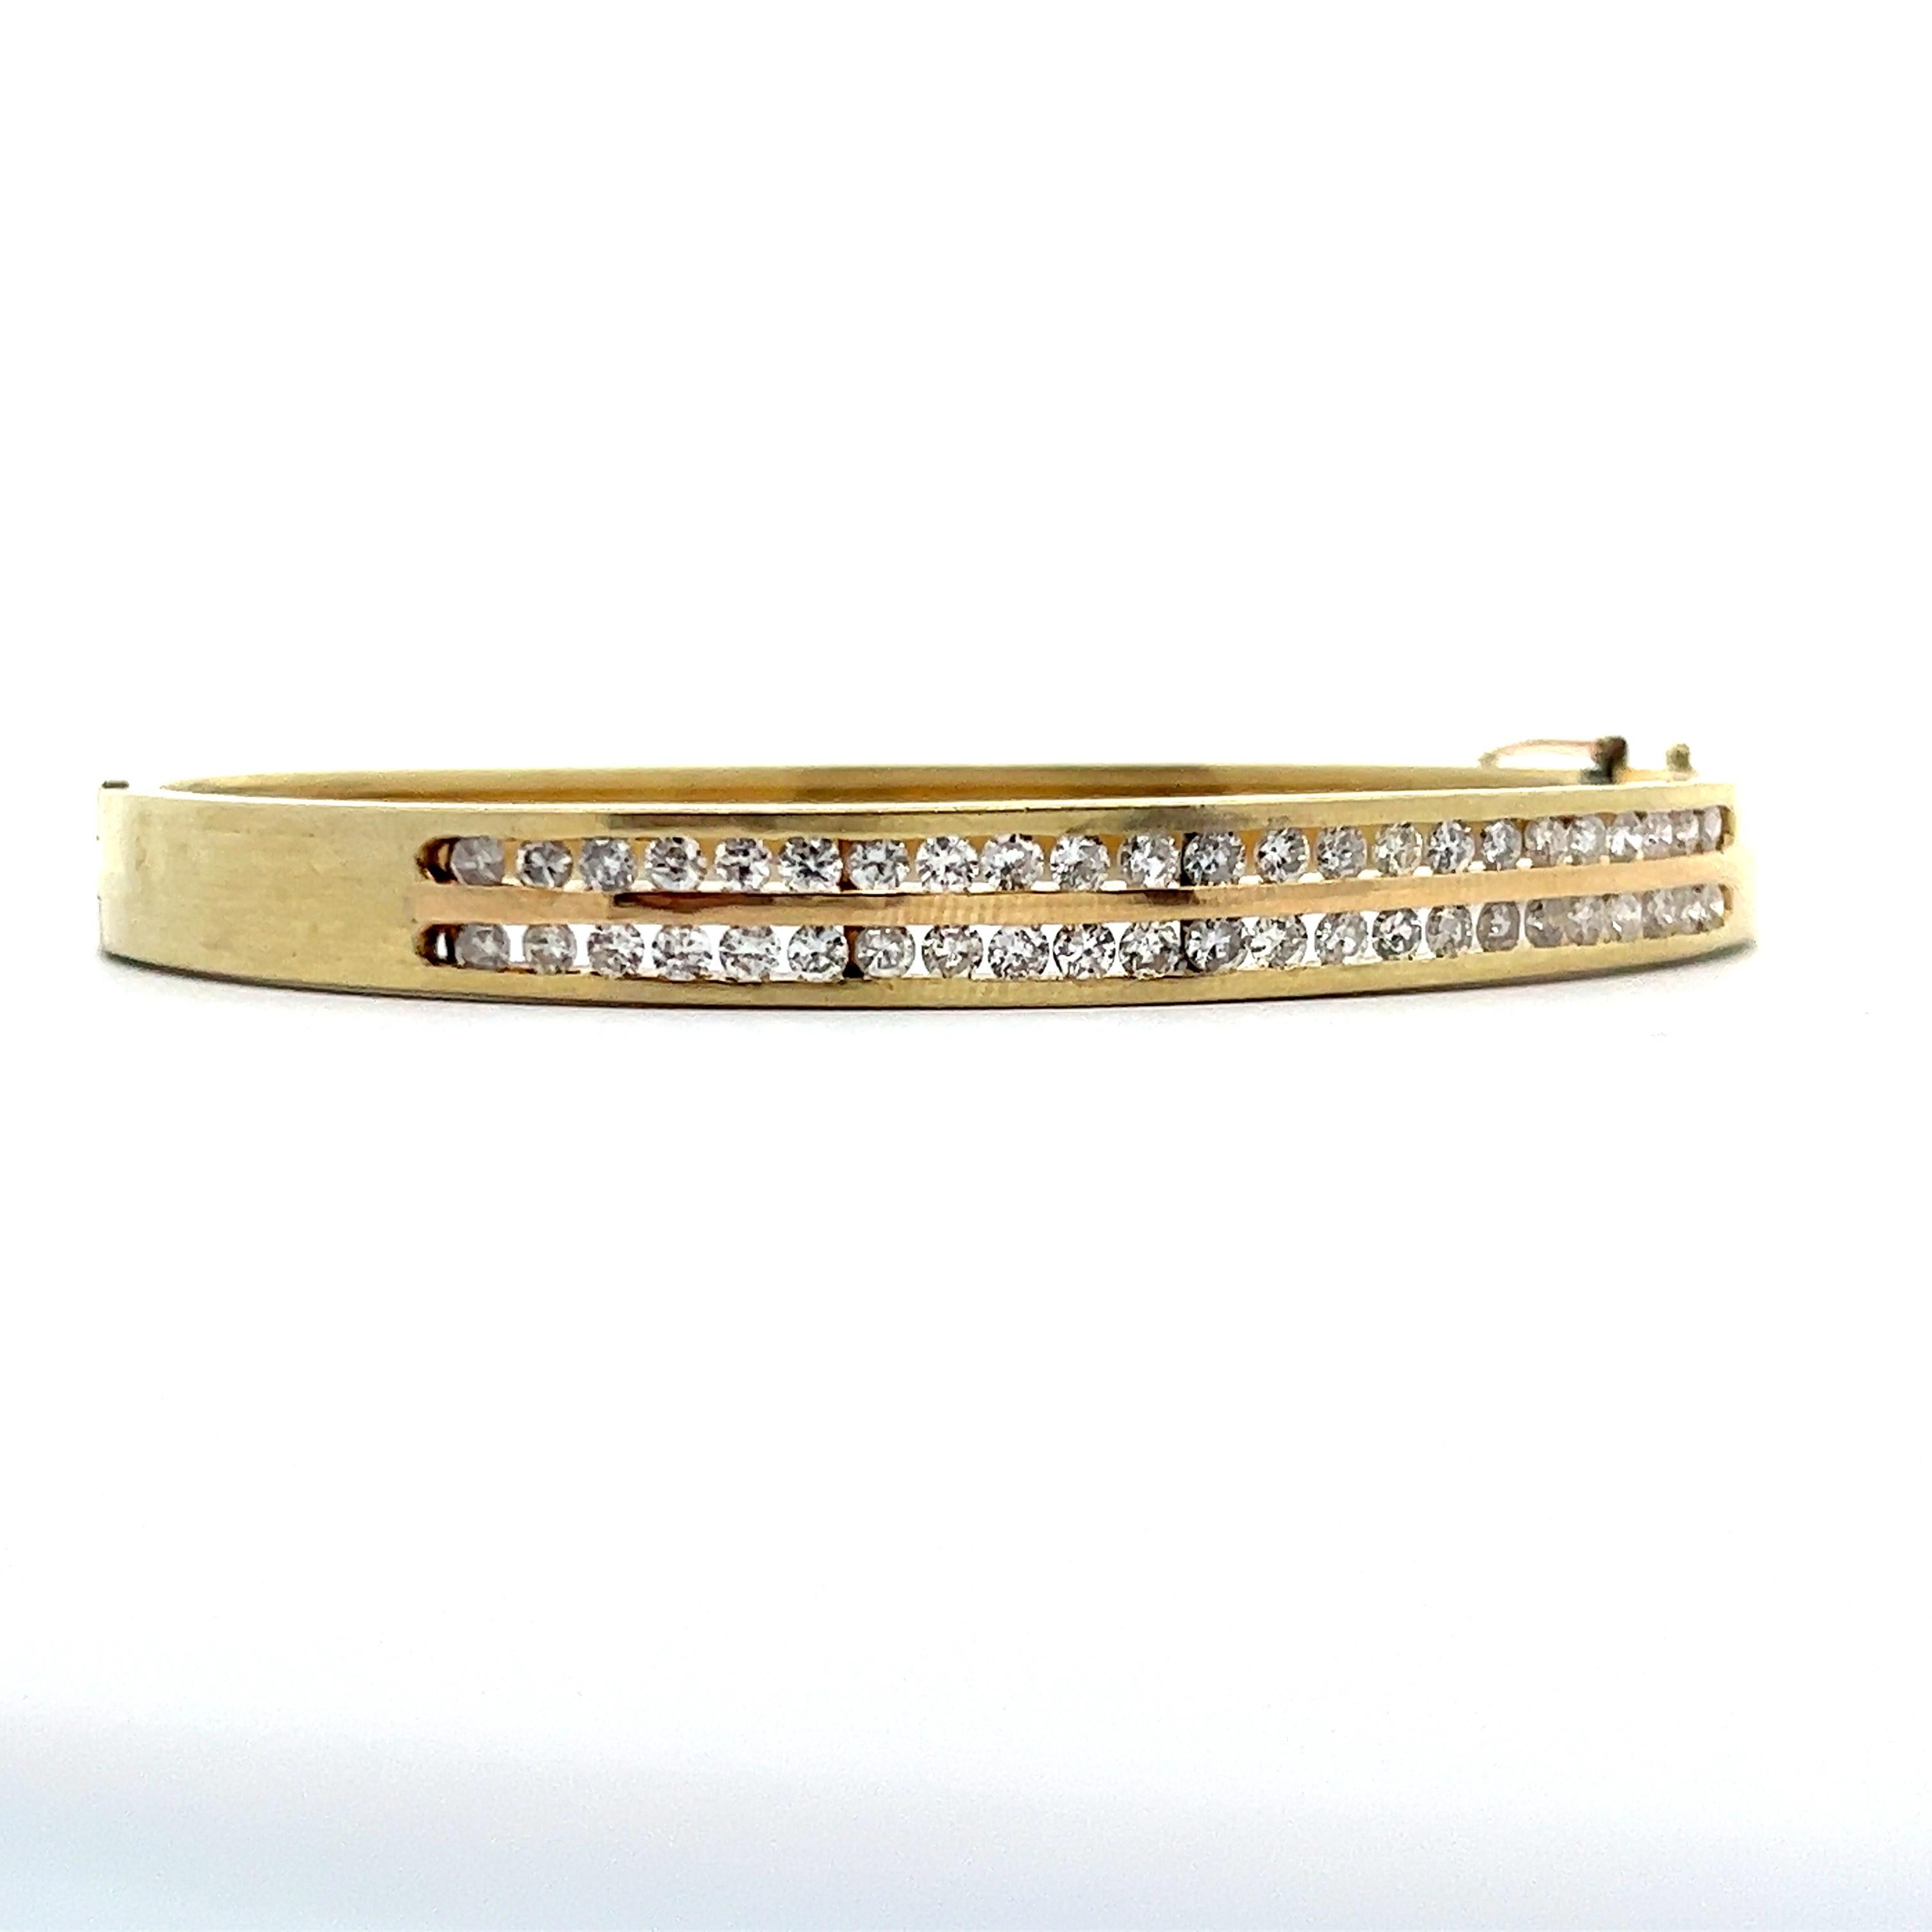 Dies ist eine schöne 14k Gelbgold Armreif Armband mit zwei Reihen von Diamanten. Dieses Armband zeichnet sich durch ein einzigartiges Design aus, bei dem die beiden Reihen von Diamanten nur auf einer Seite des Armbands gefasst sind. Dieses Design